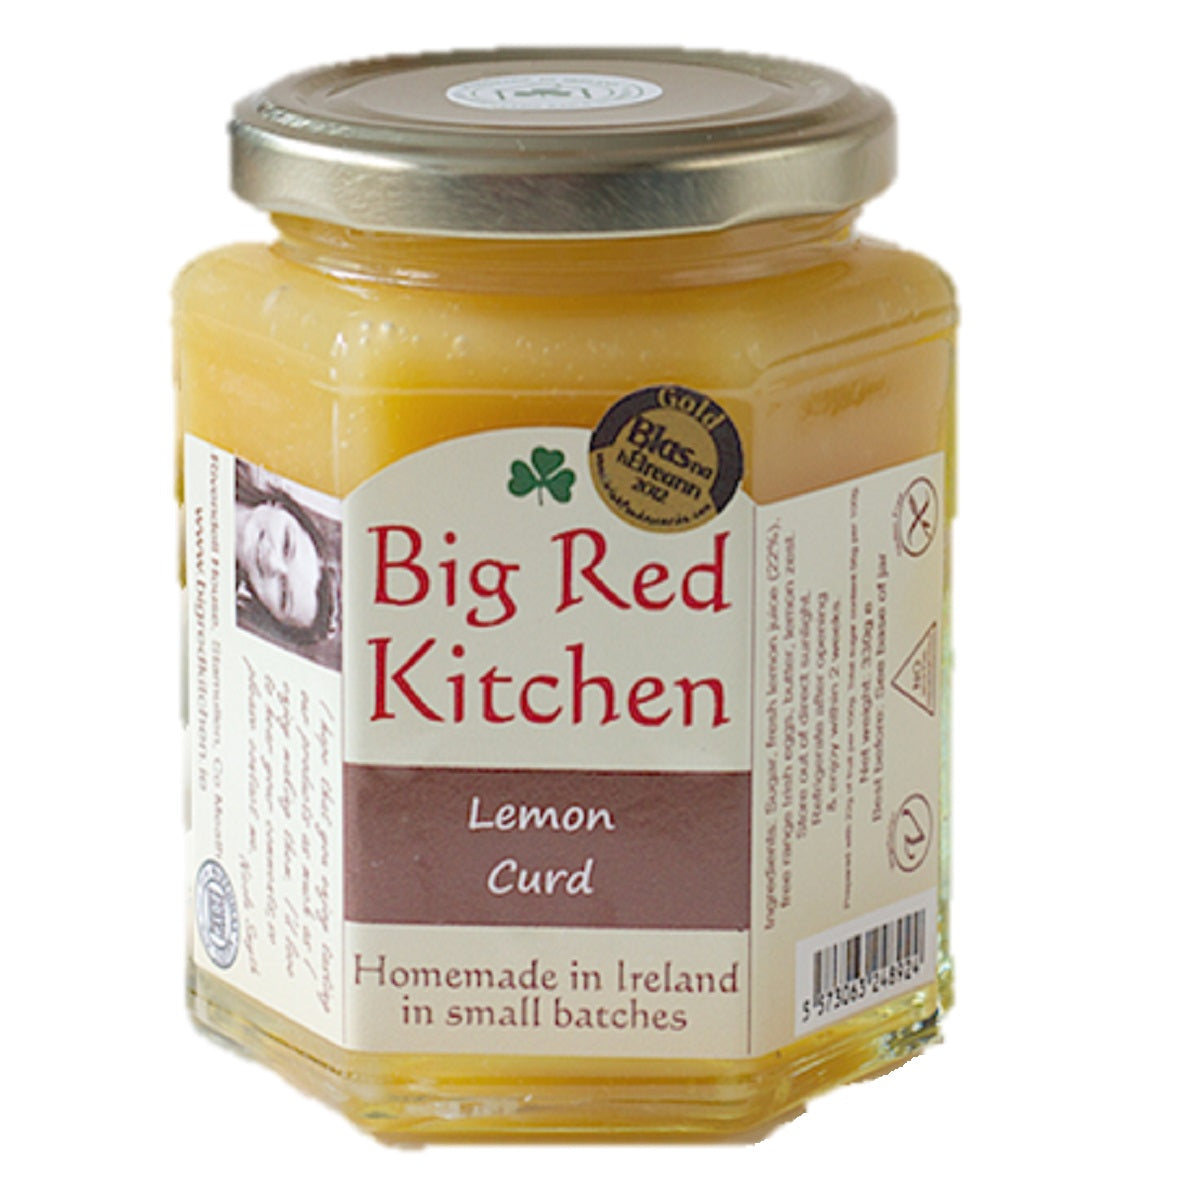 Big Red Kitchen Lemon Curd 130g